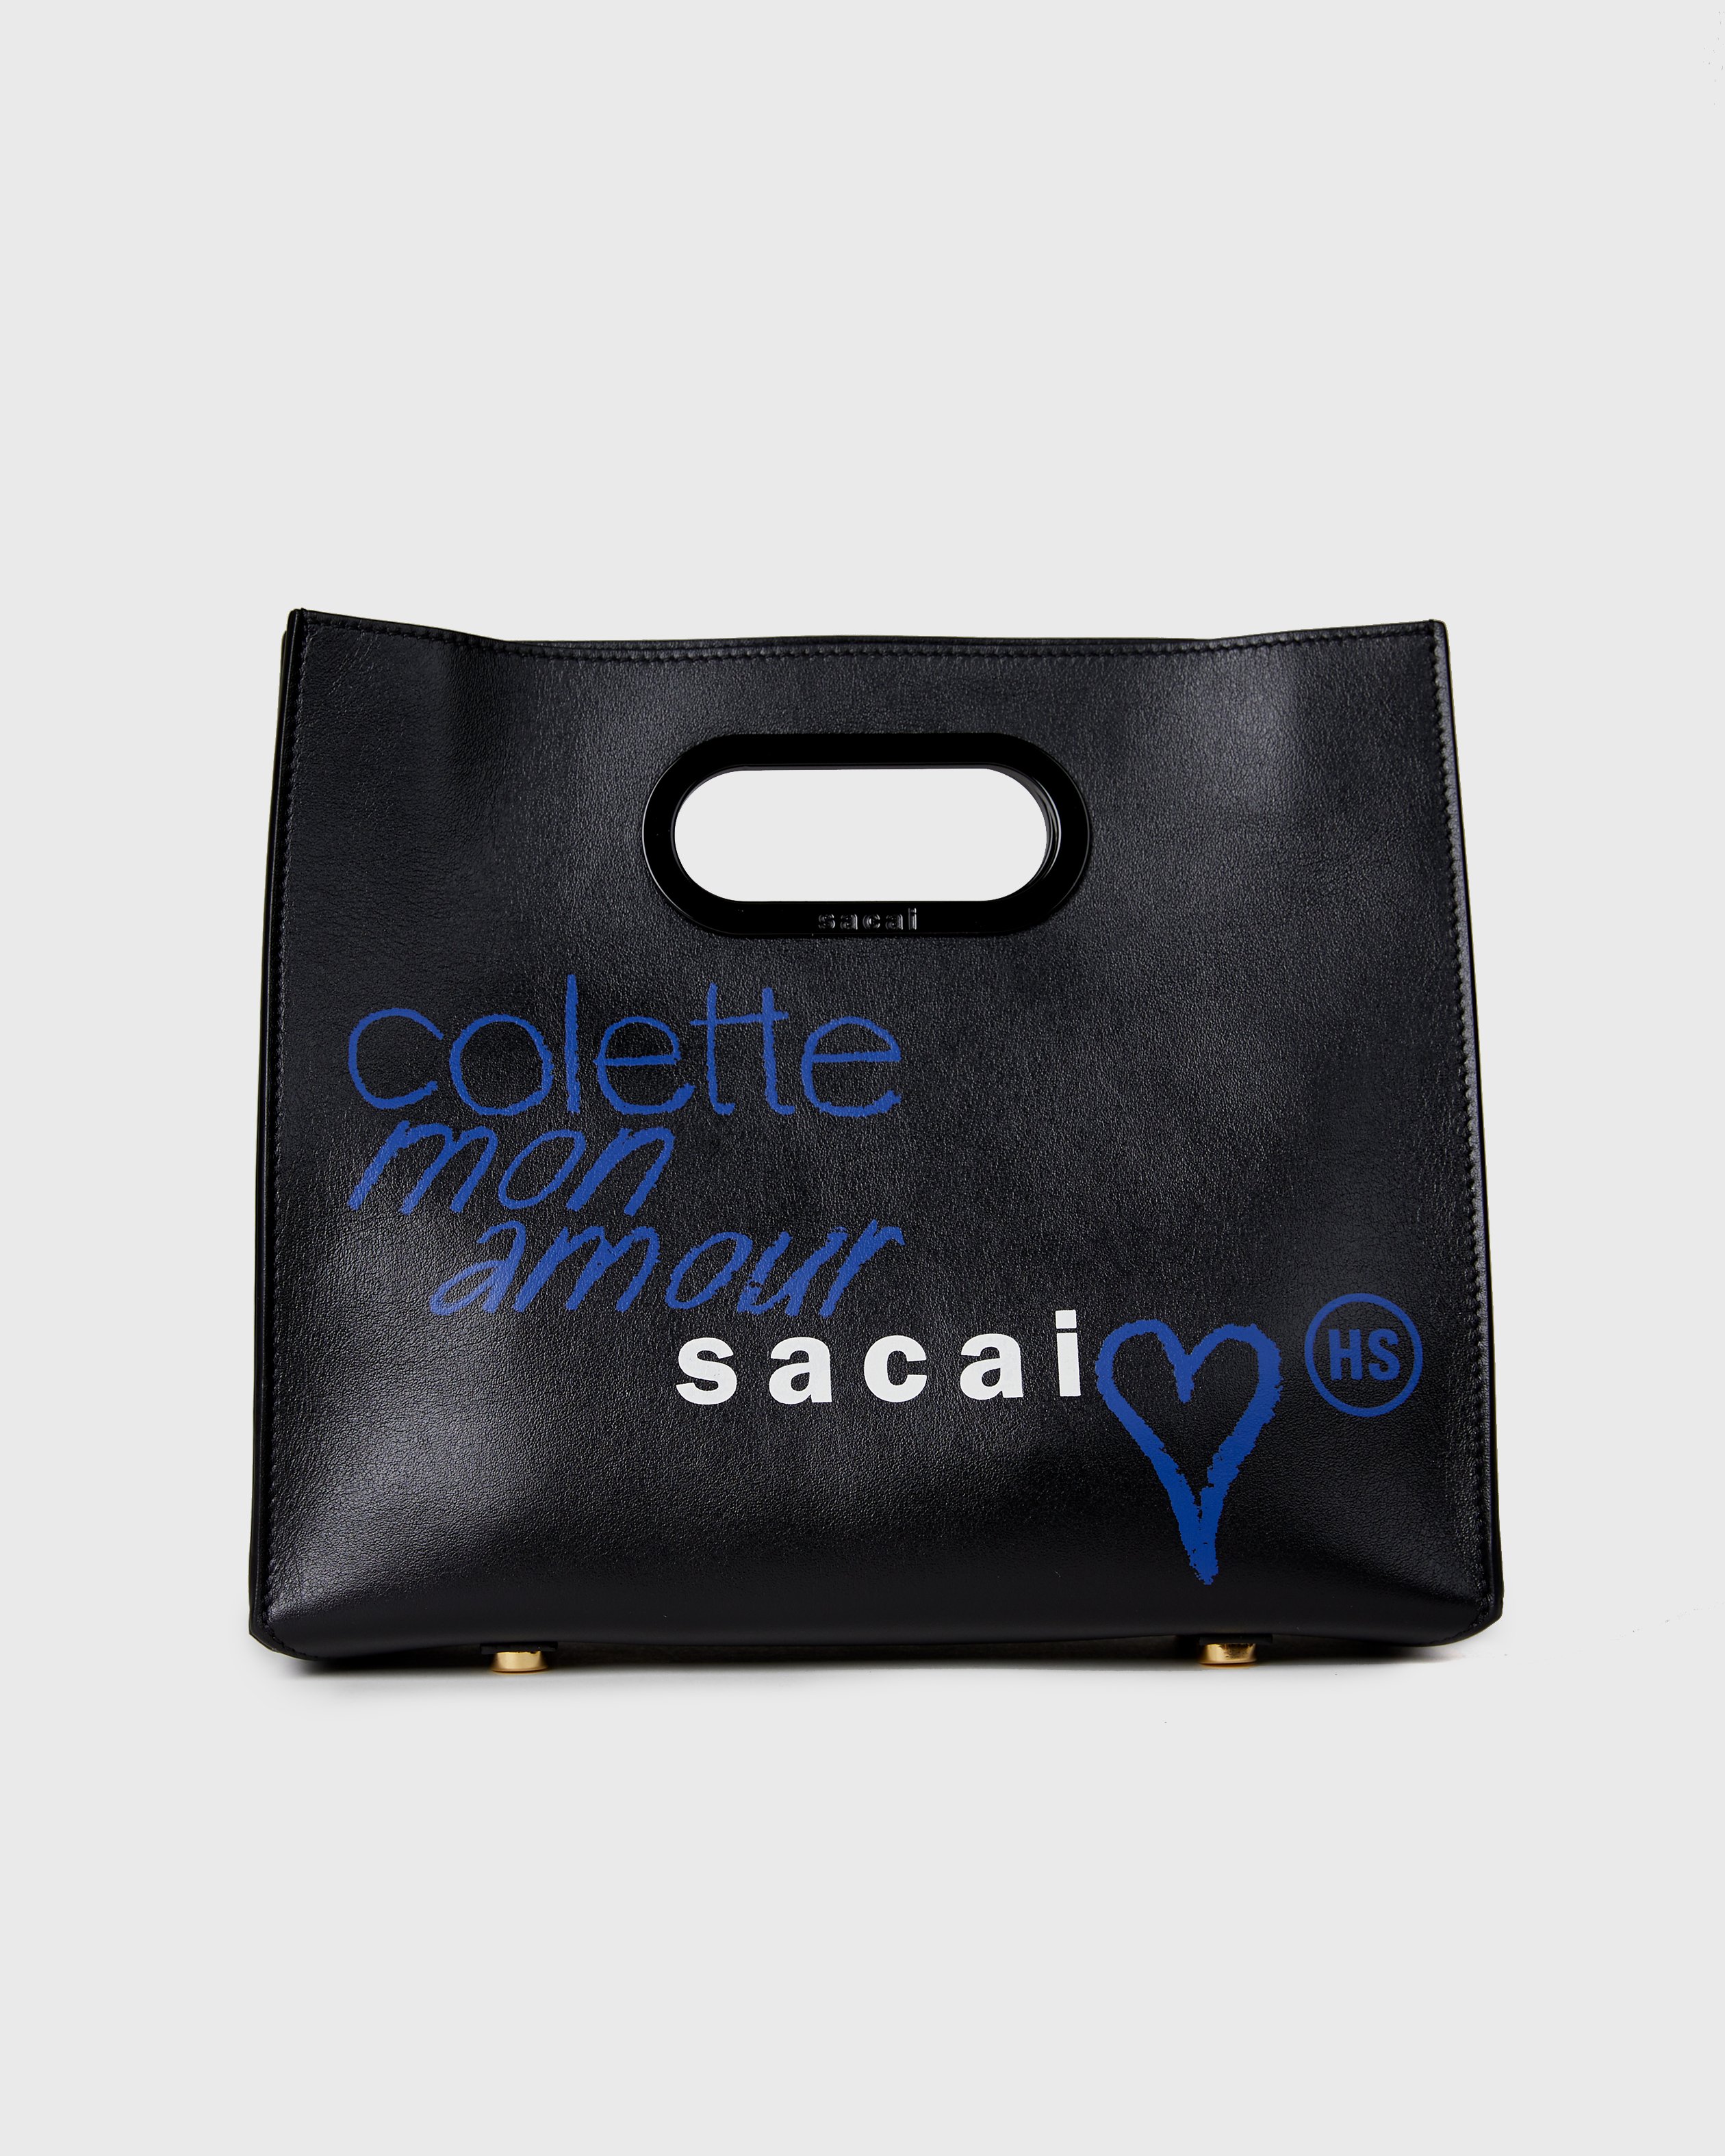 Sacai x Colette Mon Amour - Bag Black - Accessories - Black - Image 1